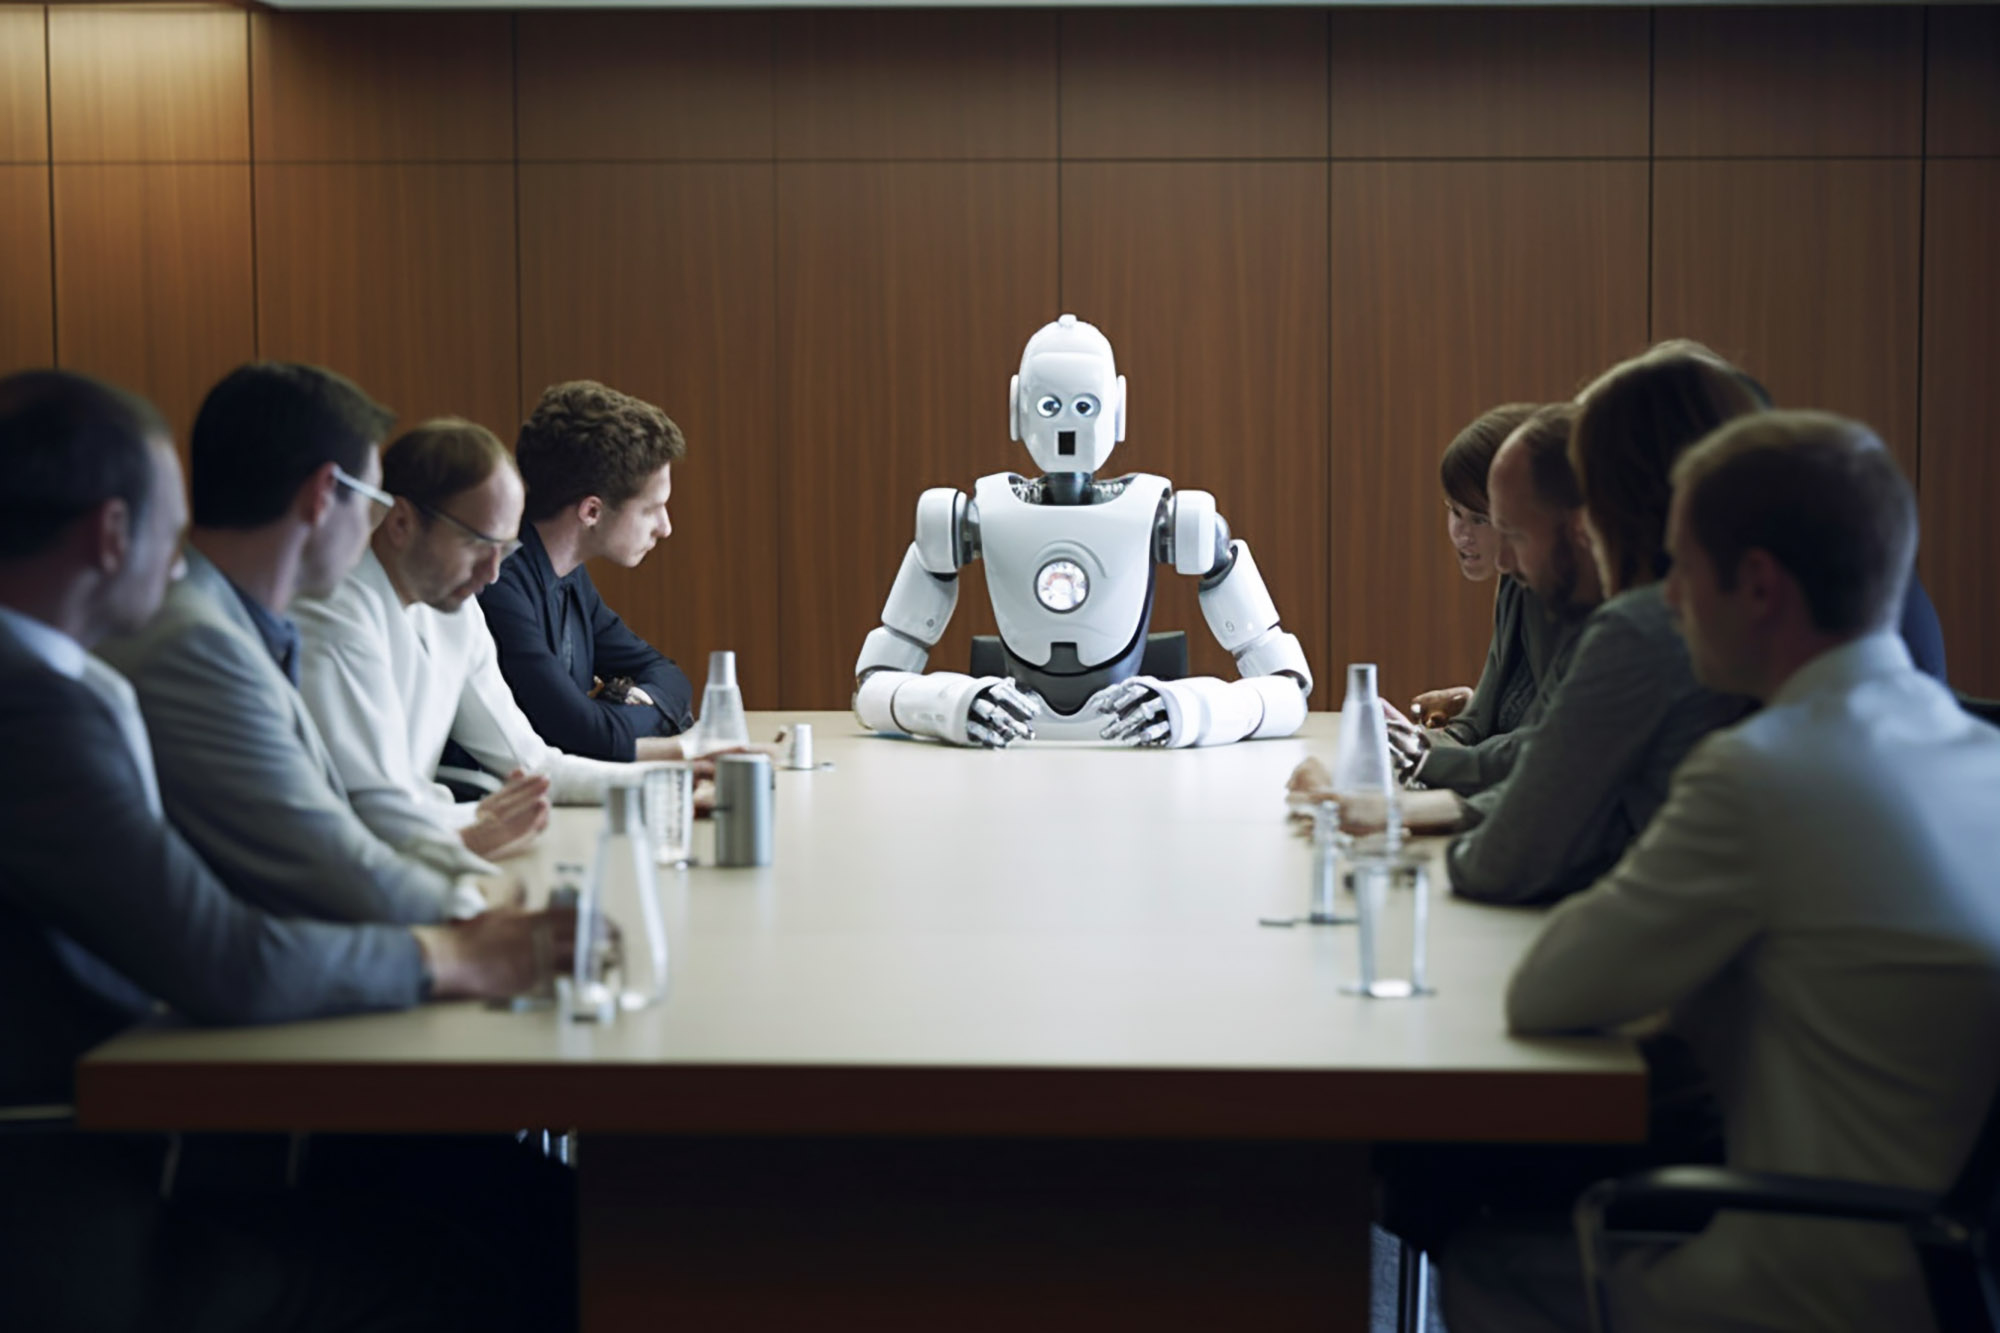 Les robots ne vont pas se rebeller pour prendre la place des humains... si on leur demande